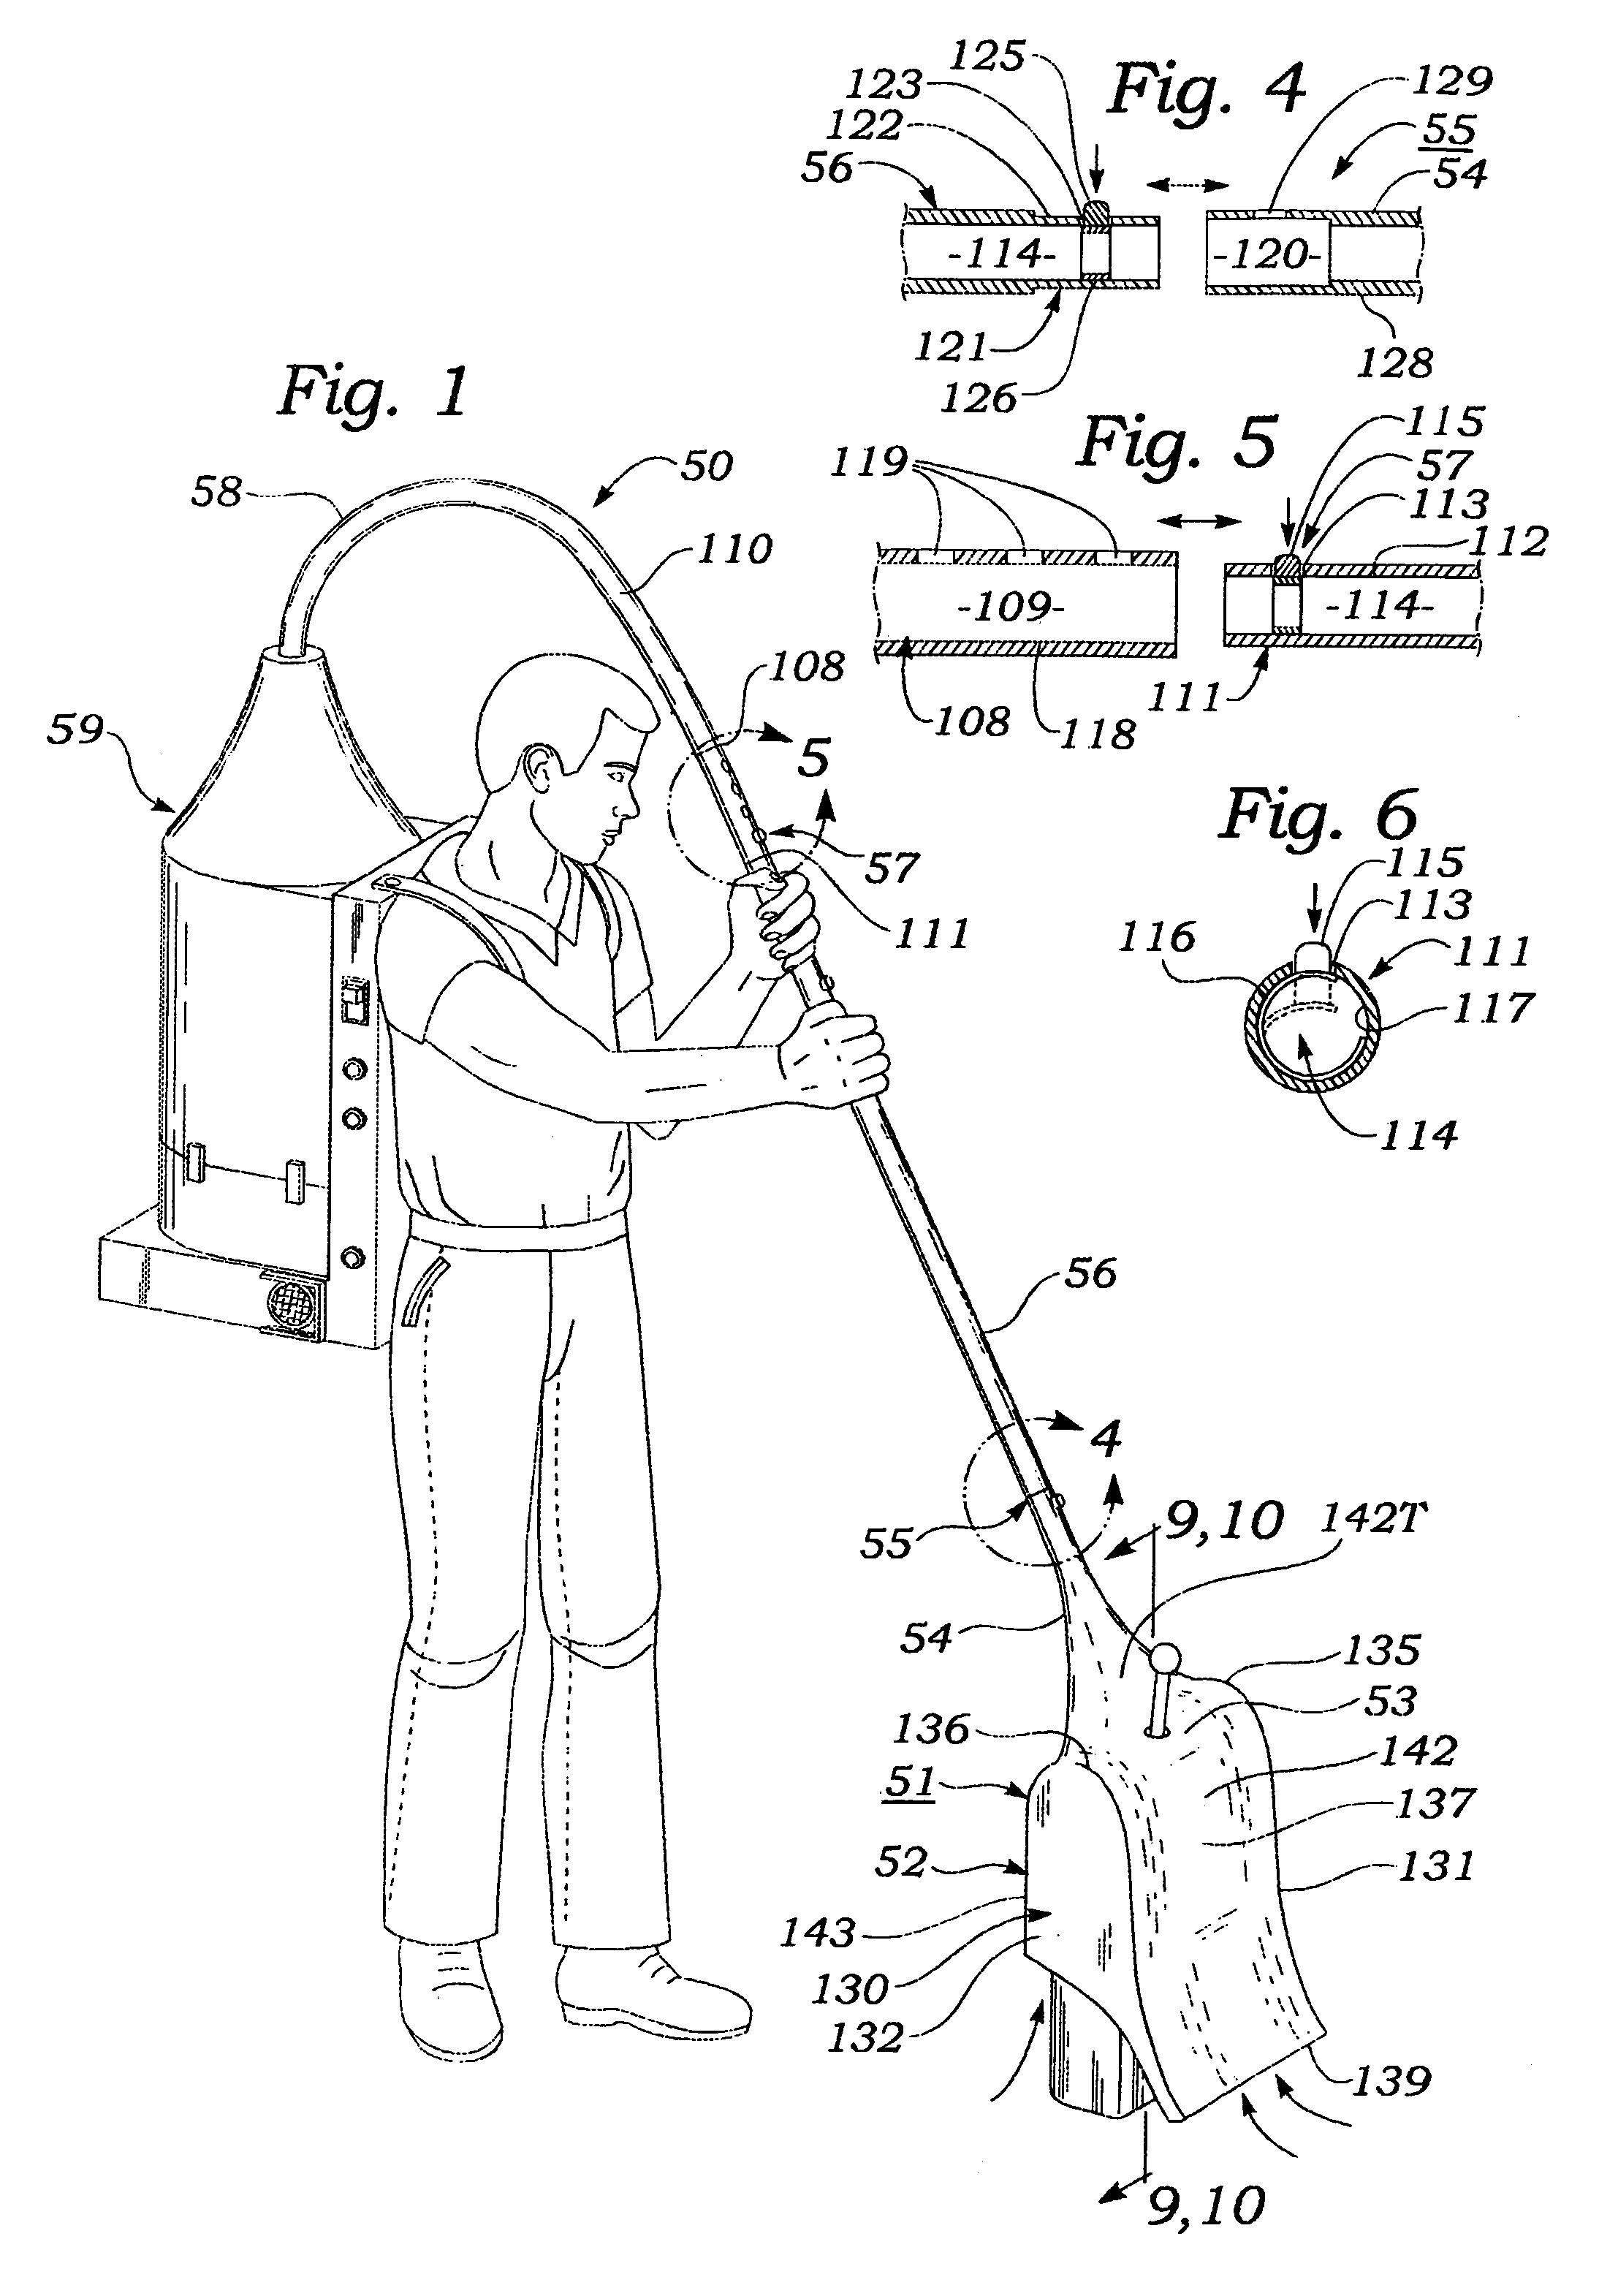 Vacuum broom apparatus